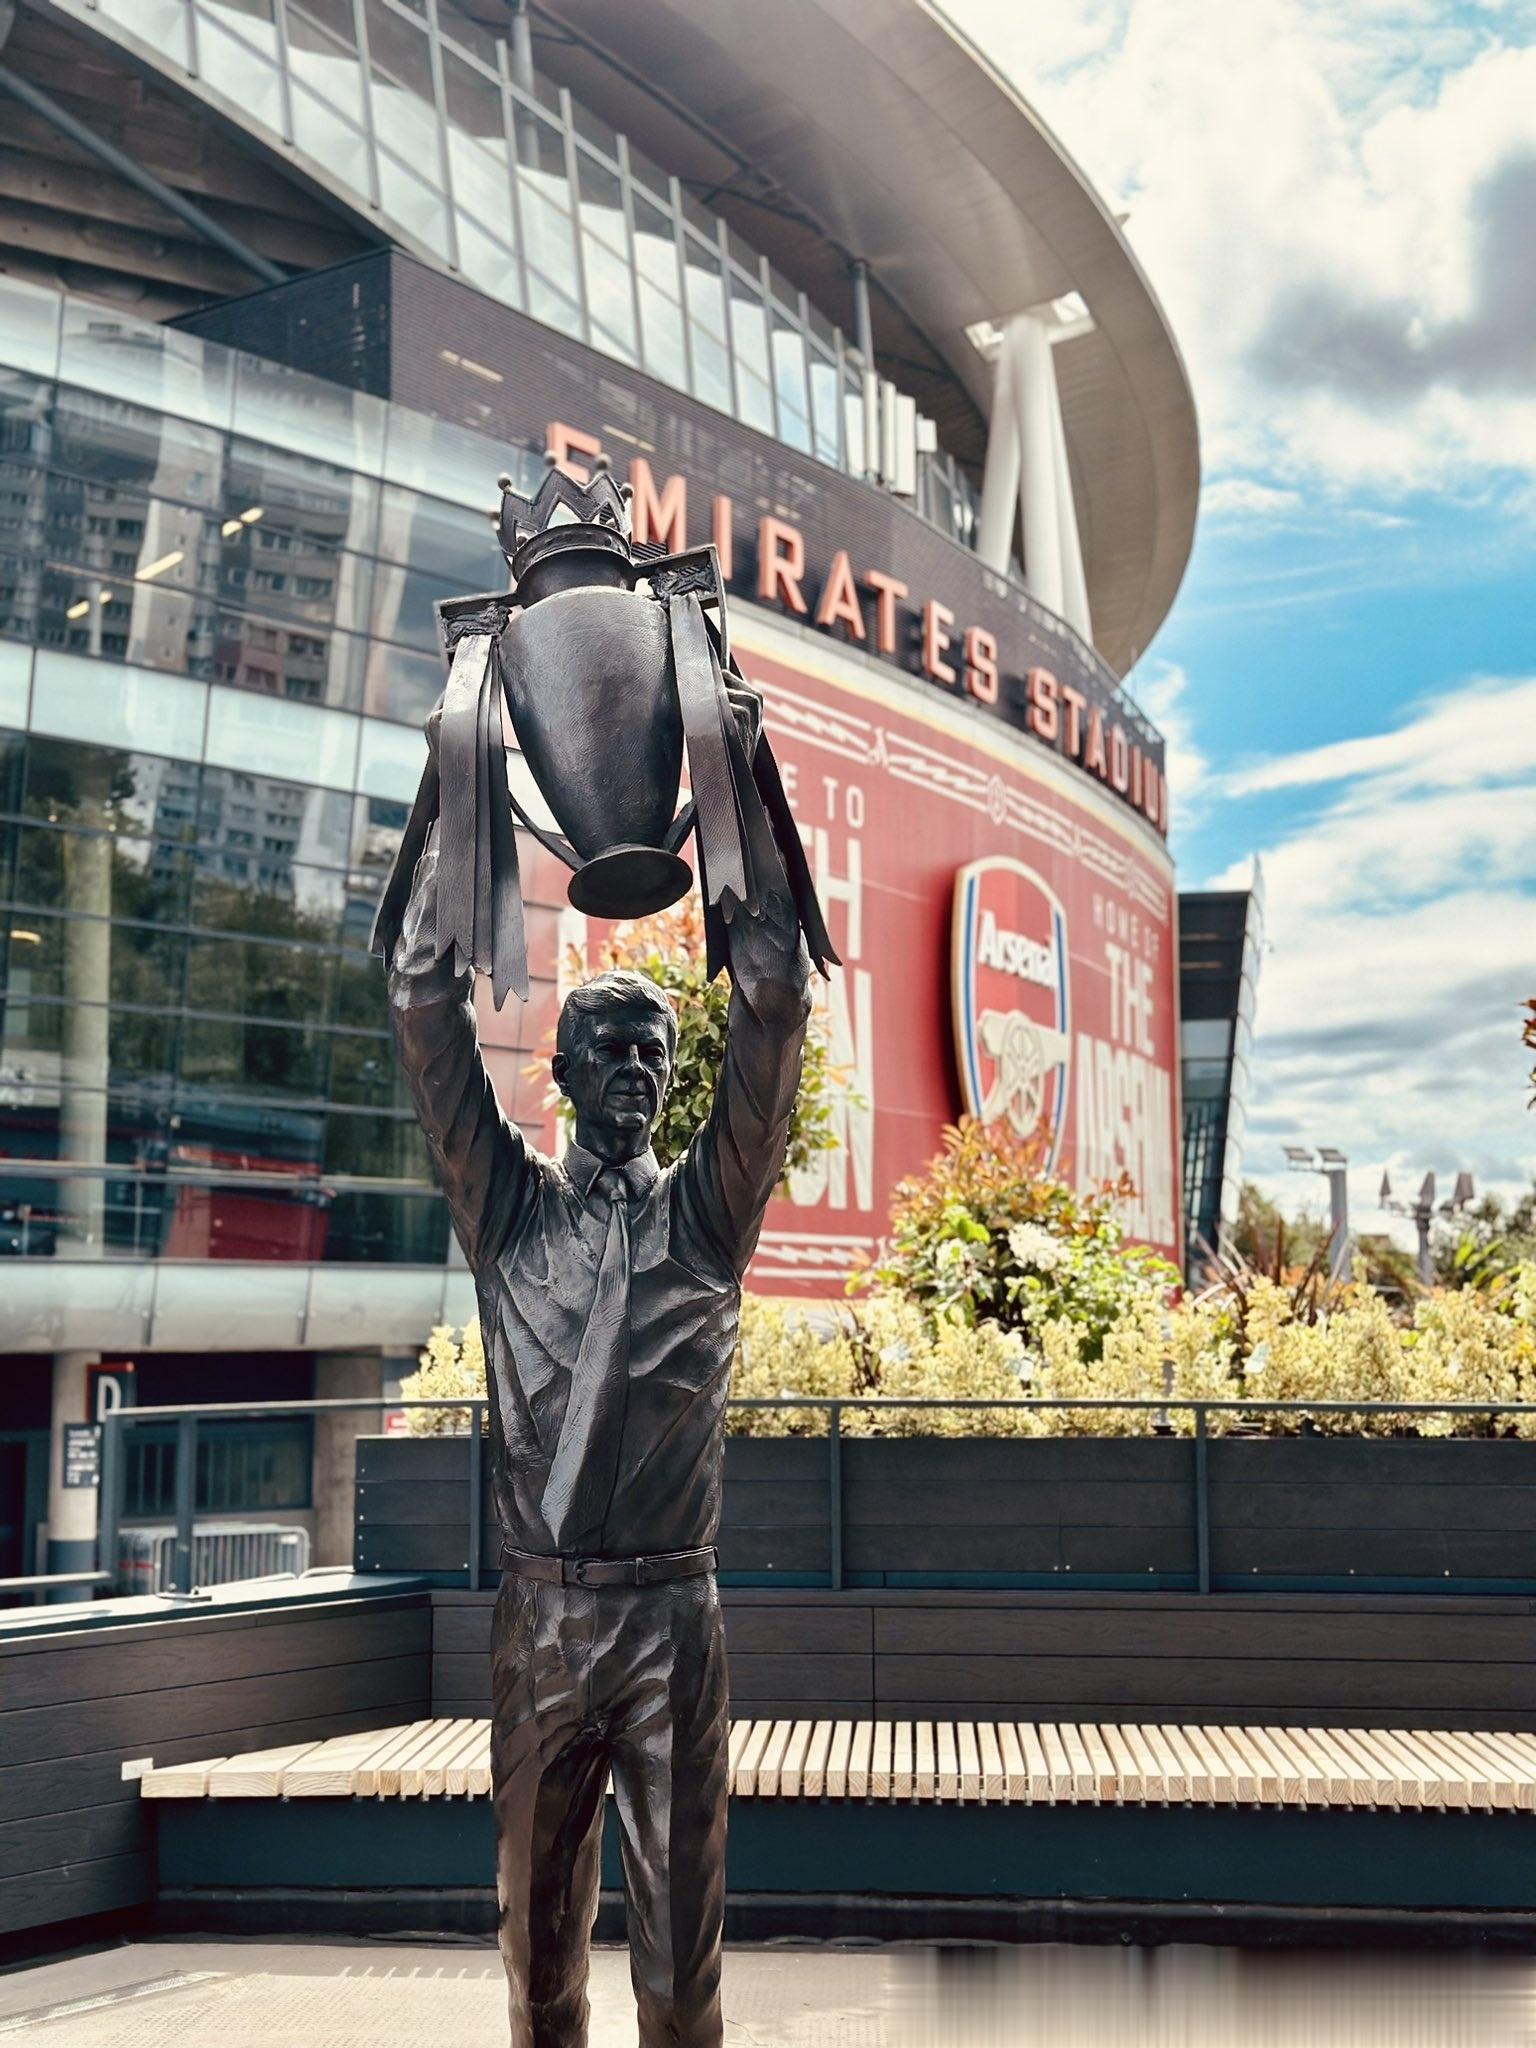 # 天下足球##英超# 阿森纳官方公布了为温格制作的雕像造型，造型来自温格手举英(2)